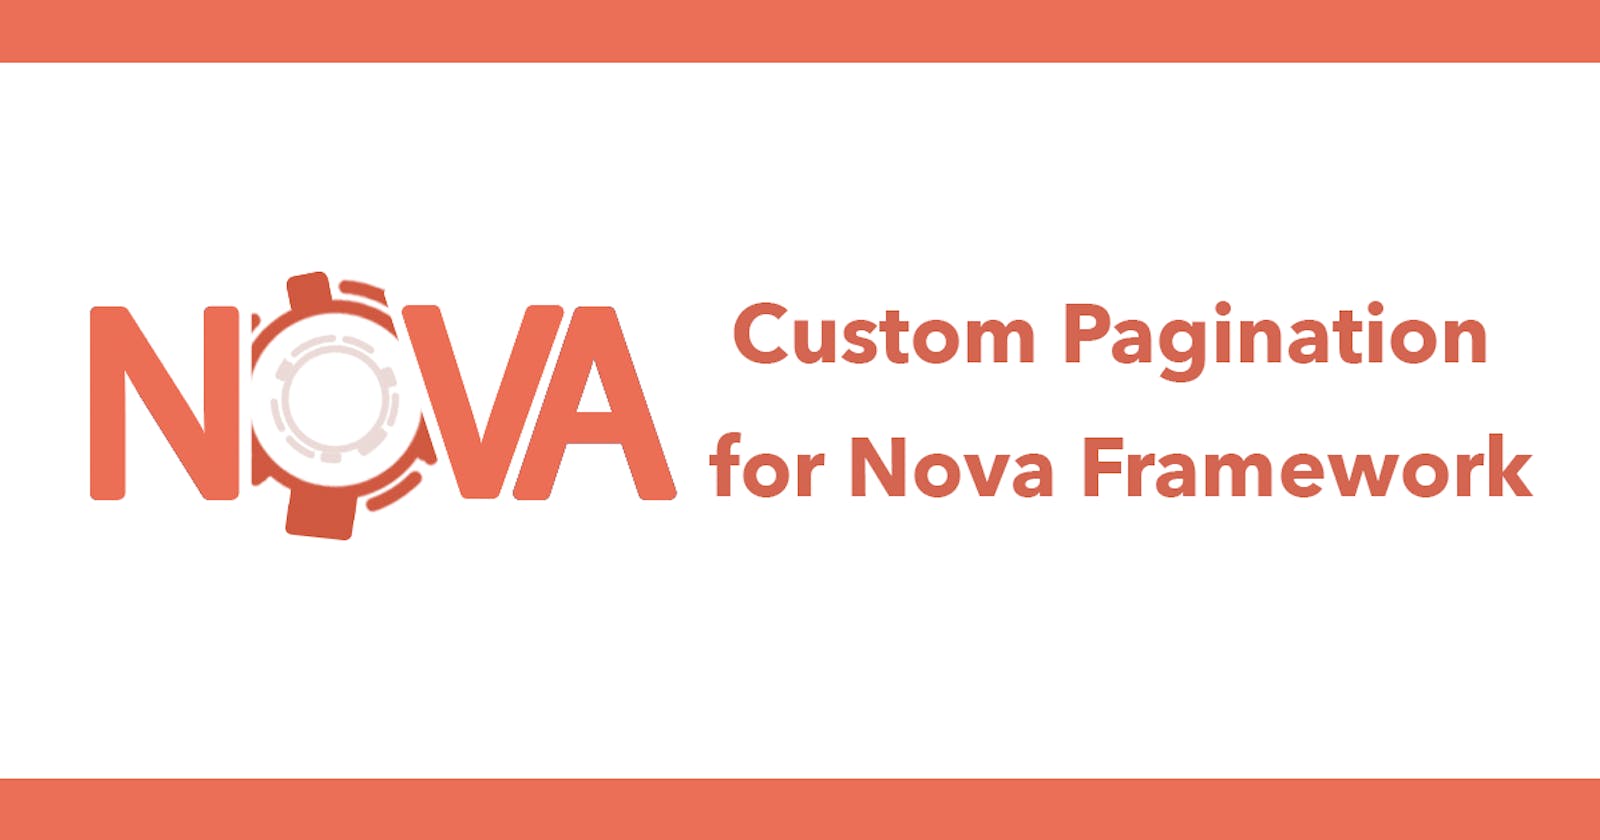 Custom Pagination for Nova Framework